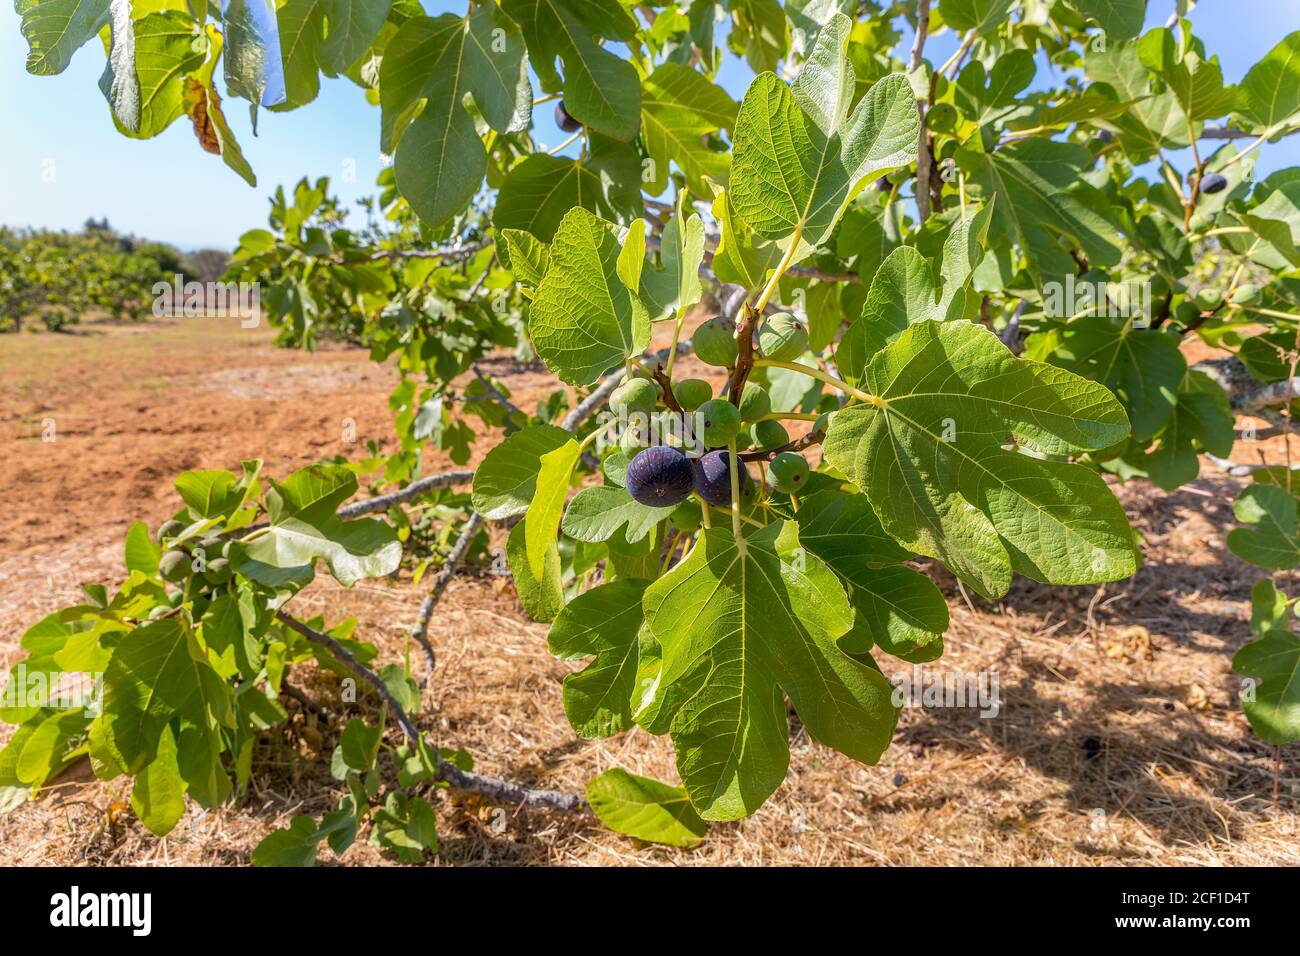 Groupe de figues comme fruits accrochés aux branches de figues avec feuilles dans le verger portugais Banque D'Images